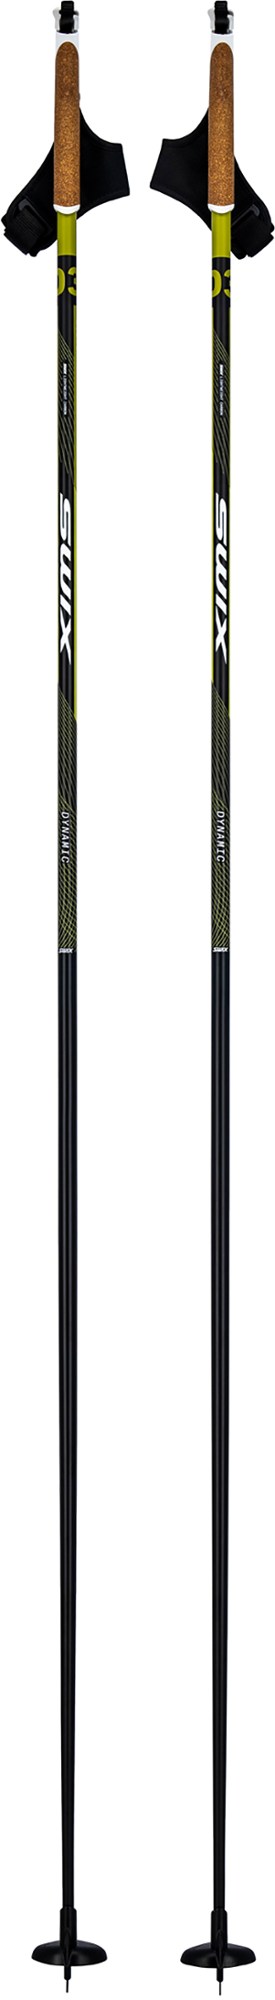 Палки для беговых лыж Dynamic D3 Swix, черный